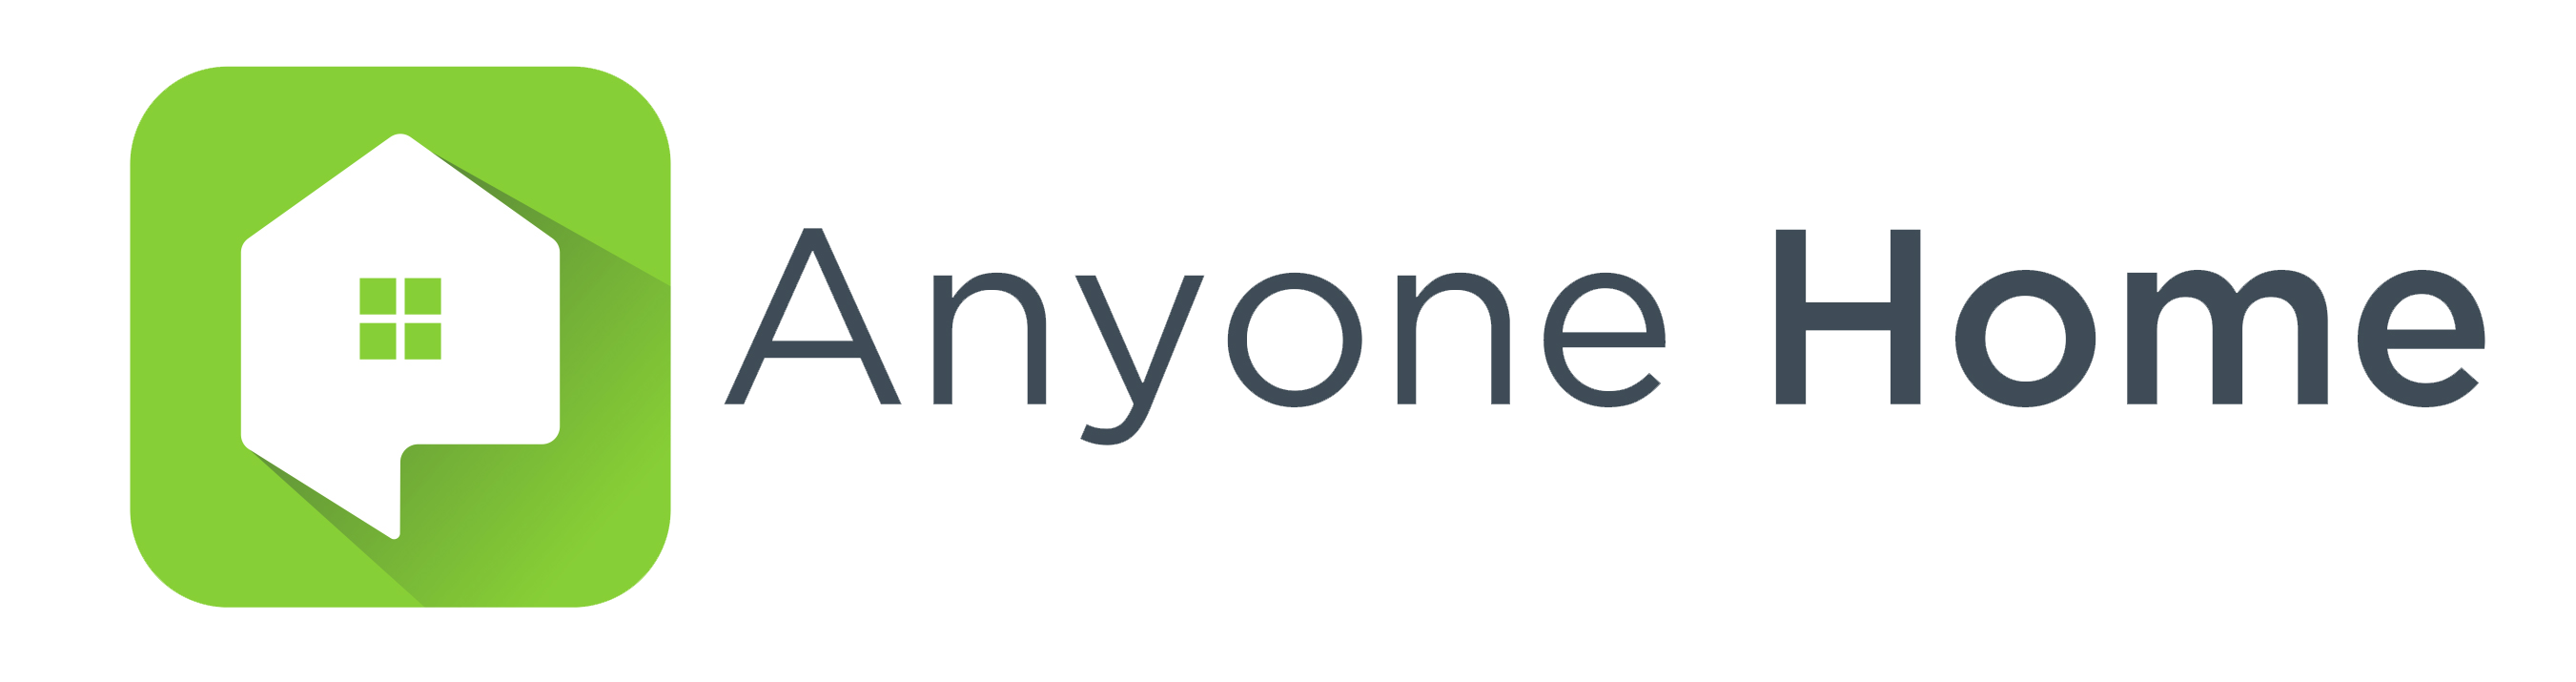 Anyone Home Logo - Horizontal